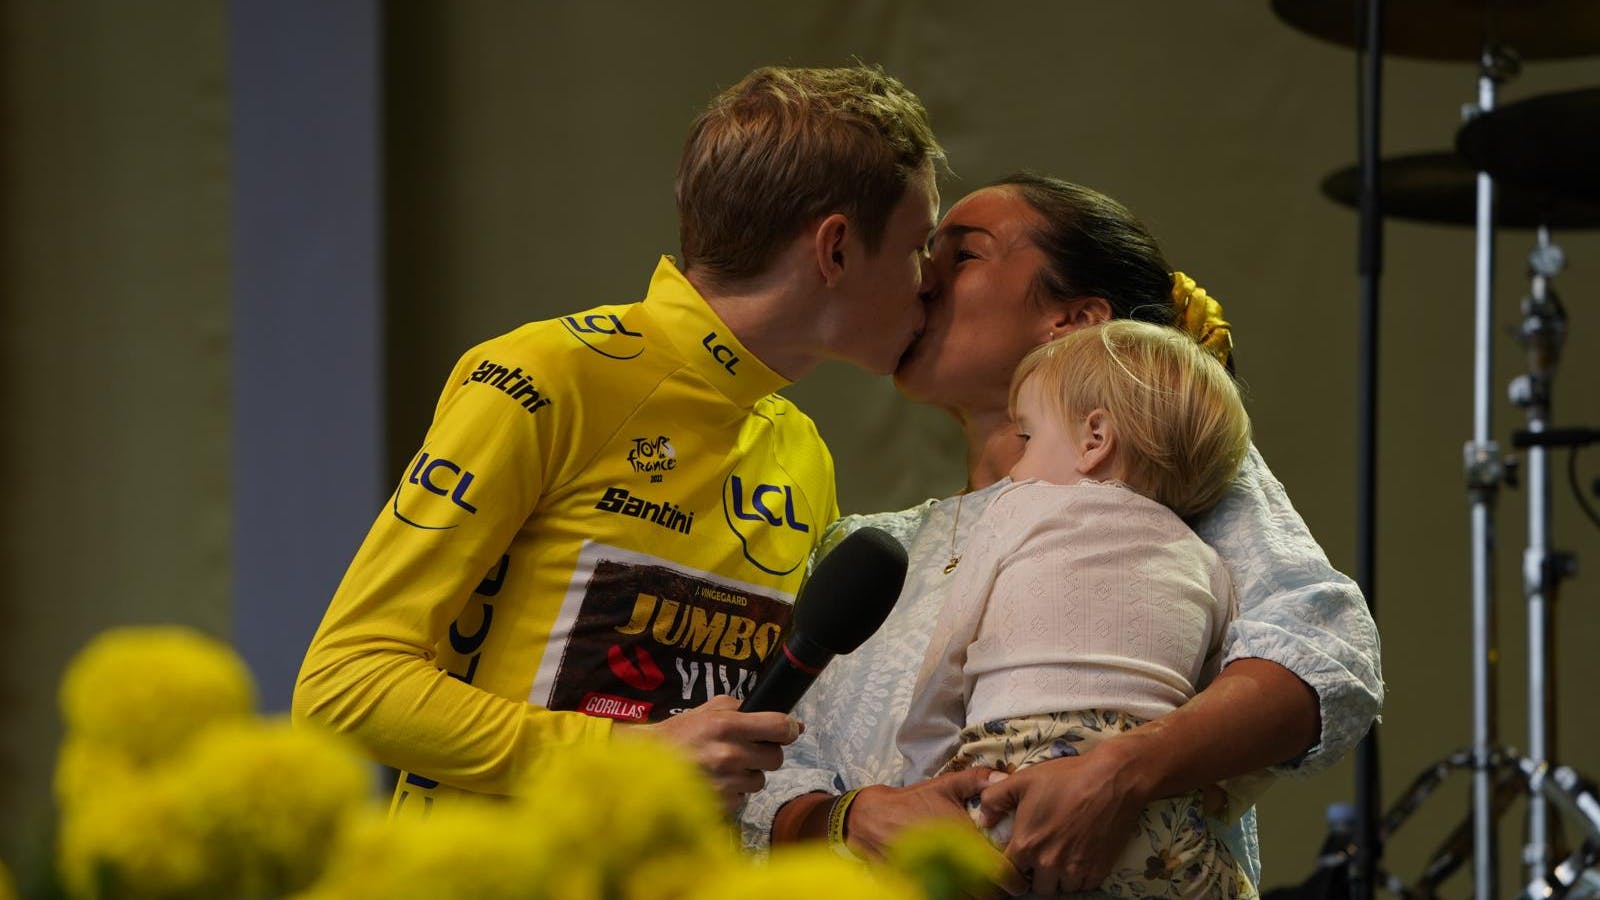 Jonas Vingegaard gør det fantastisk i Tour de France 2022